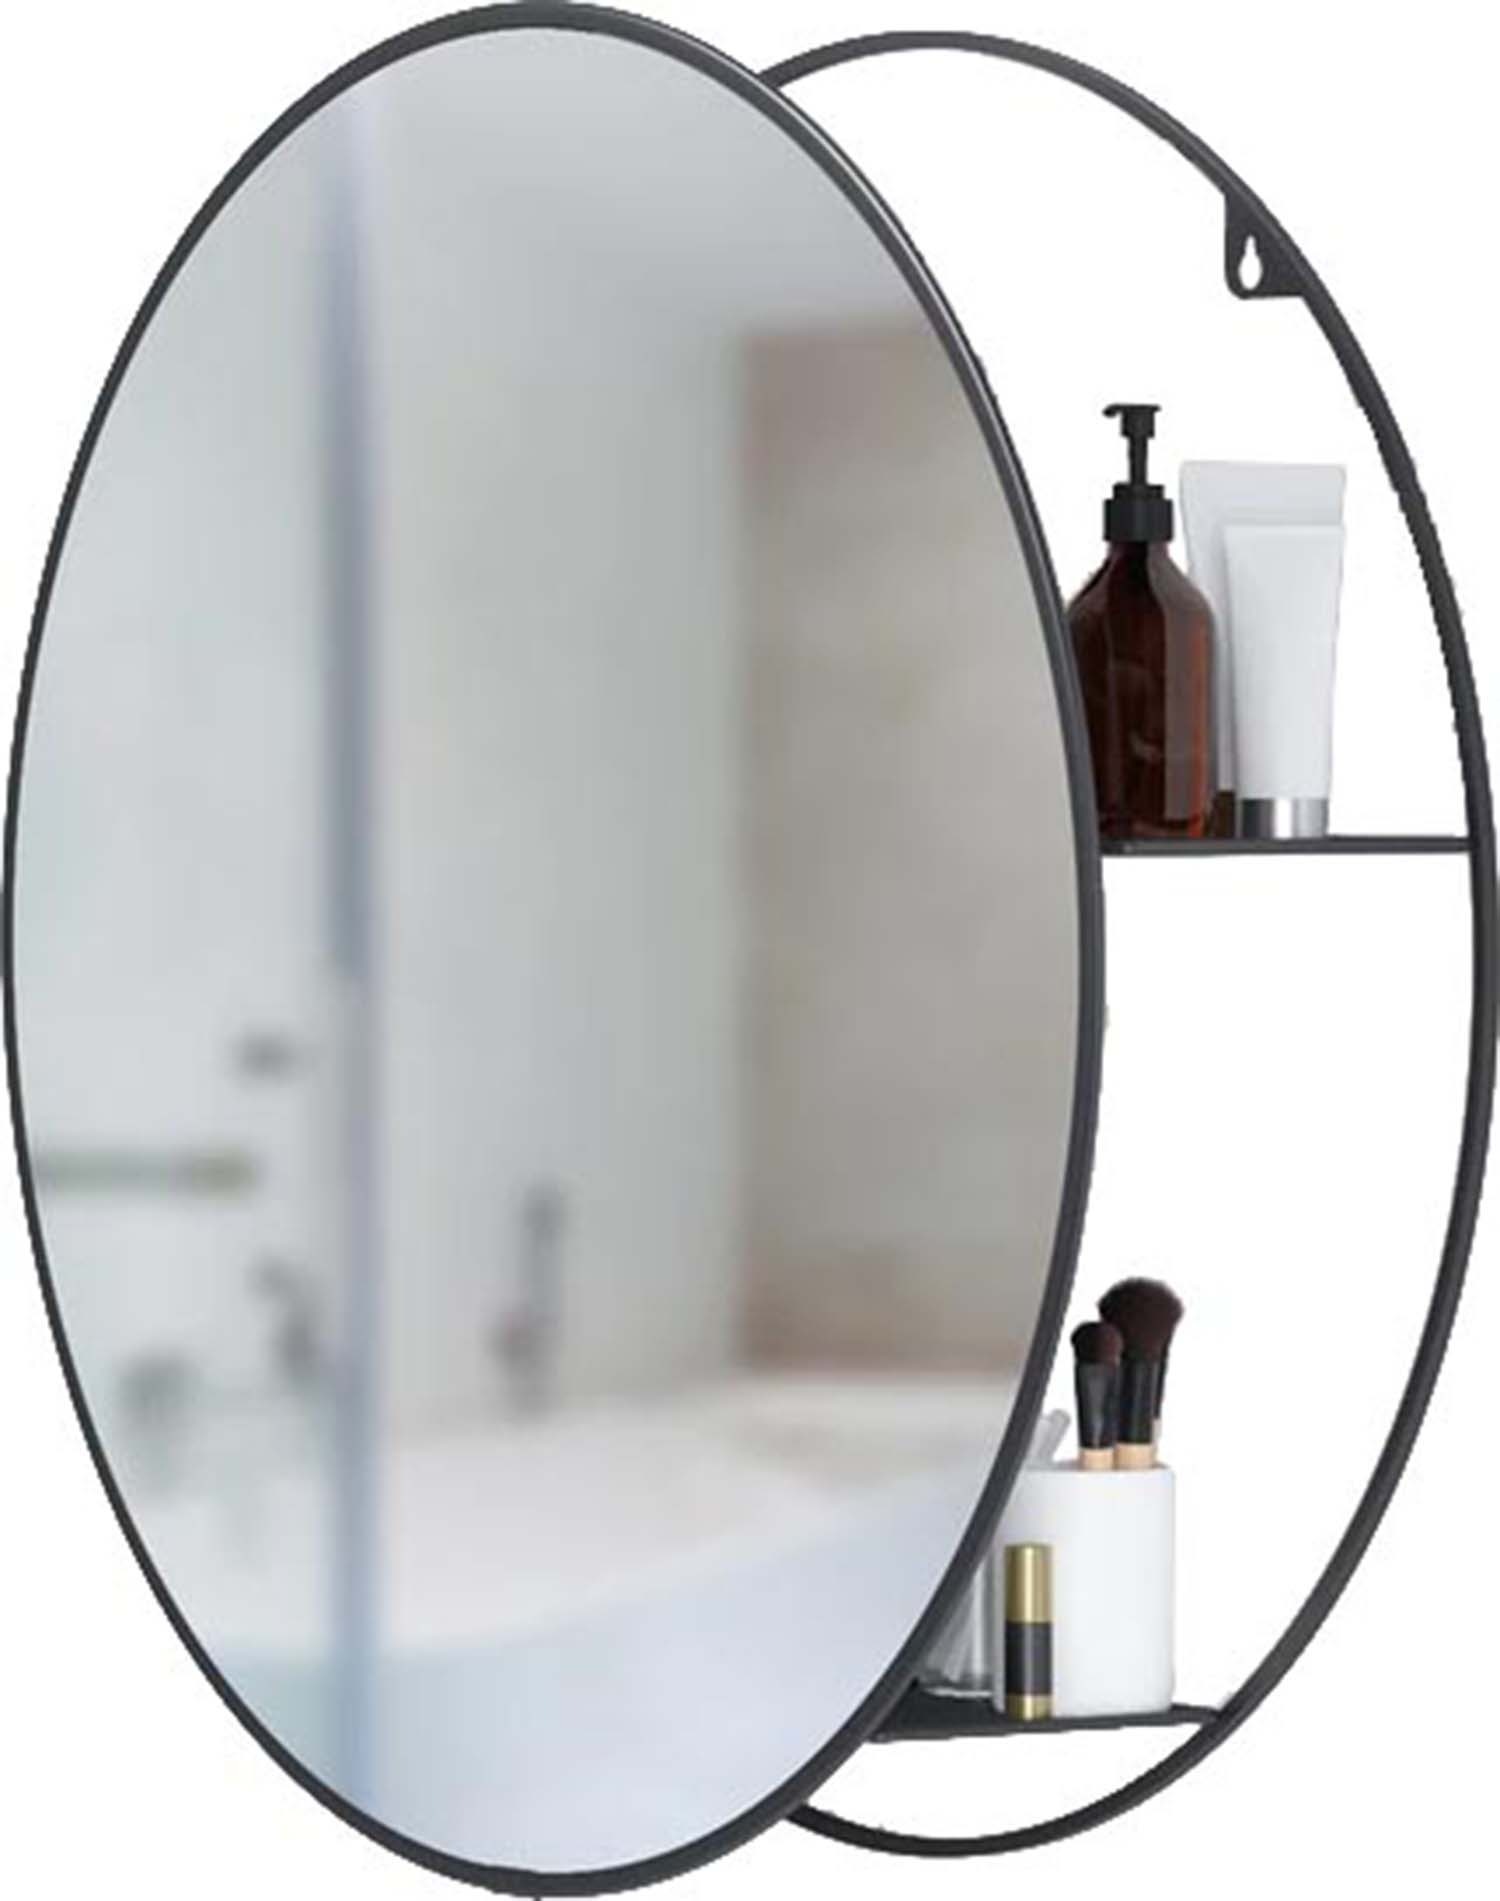 Miroir rond avec rangement intégré Cirko